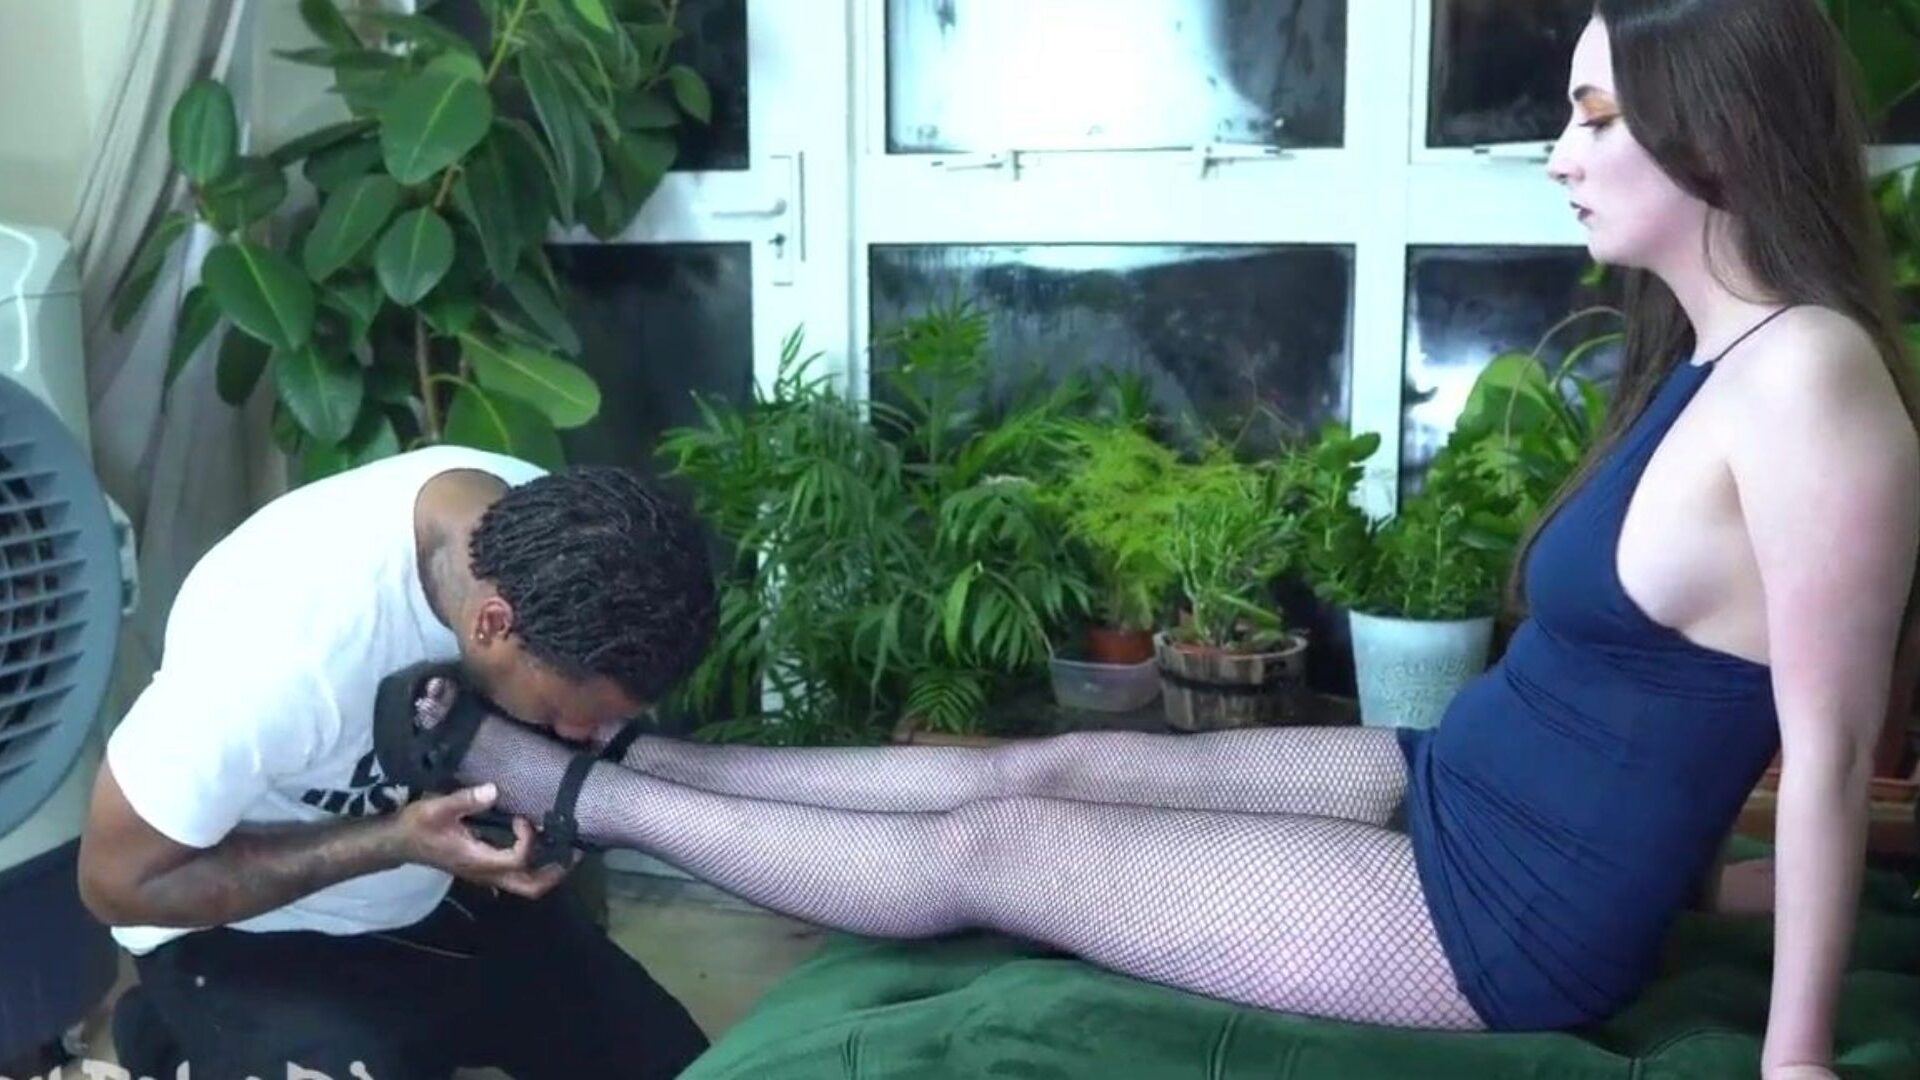 aperçu: filmer une amie lécher des copines cum-hole et adorer ses pieds pendant que cette fille lui suce la bite